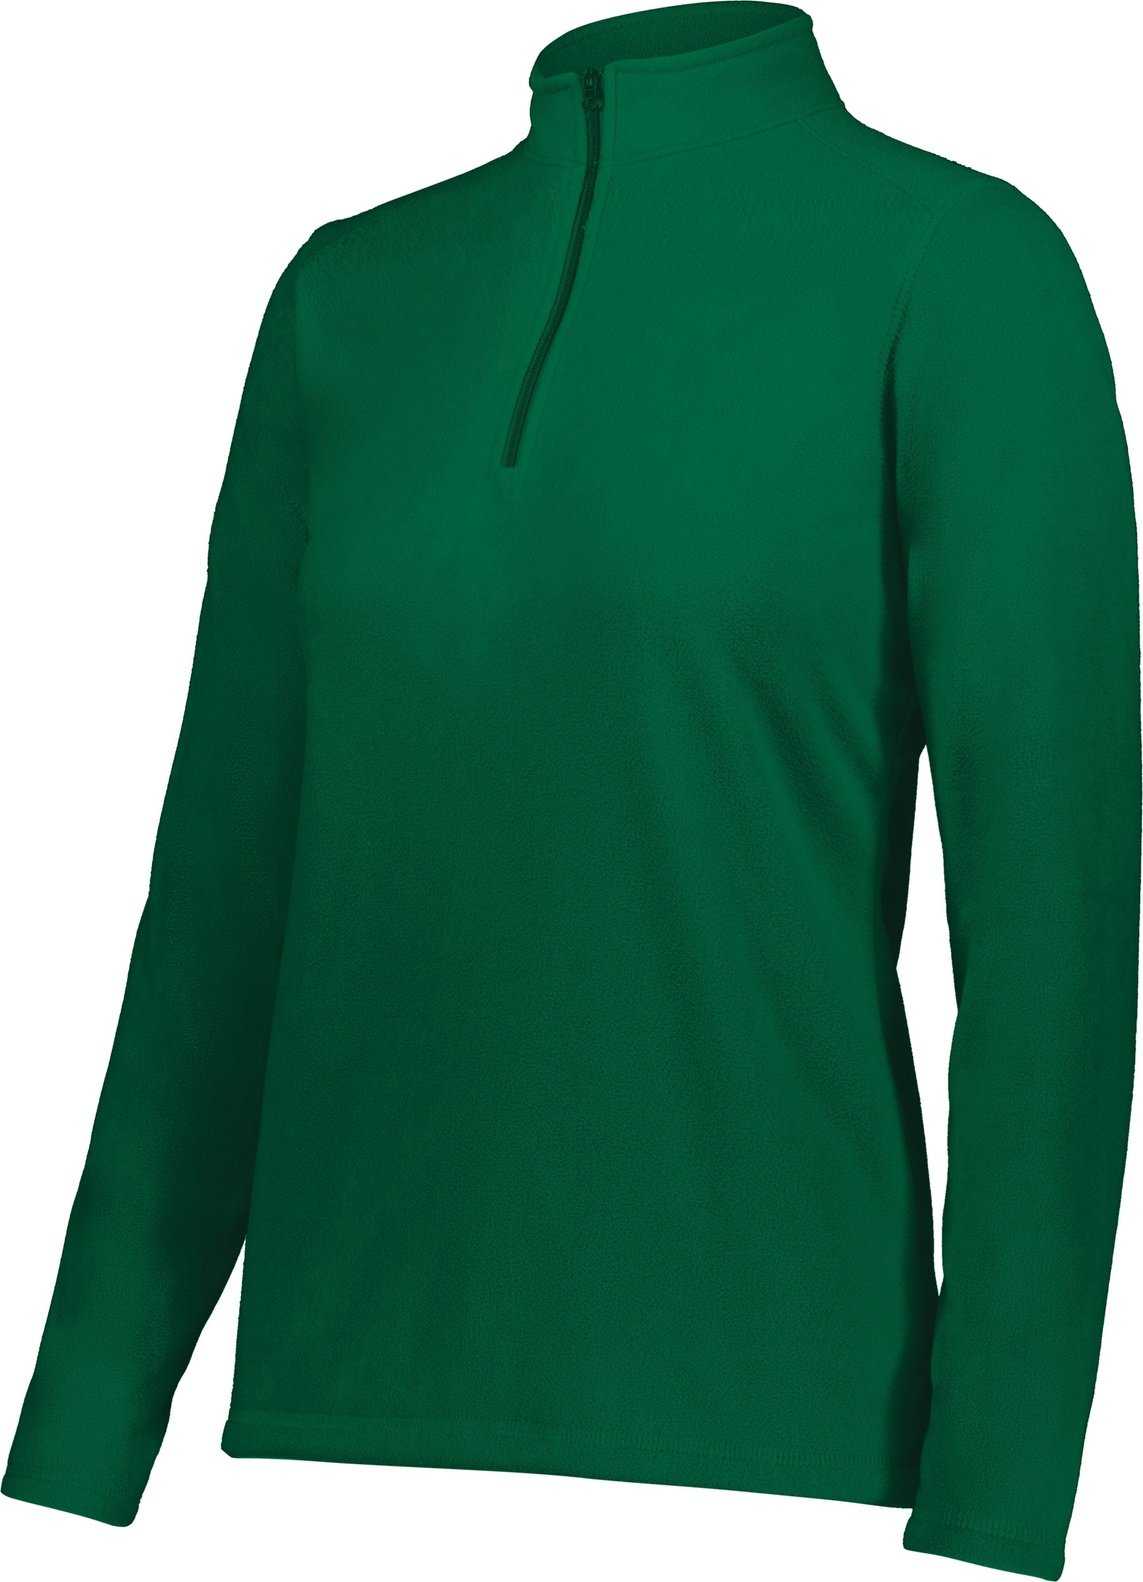 Augusta 6864 Ladies Micro-Lite Fleece 1/4 Zip Pullover - Dark Green - HIT a Double